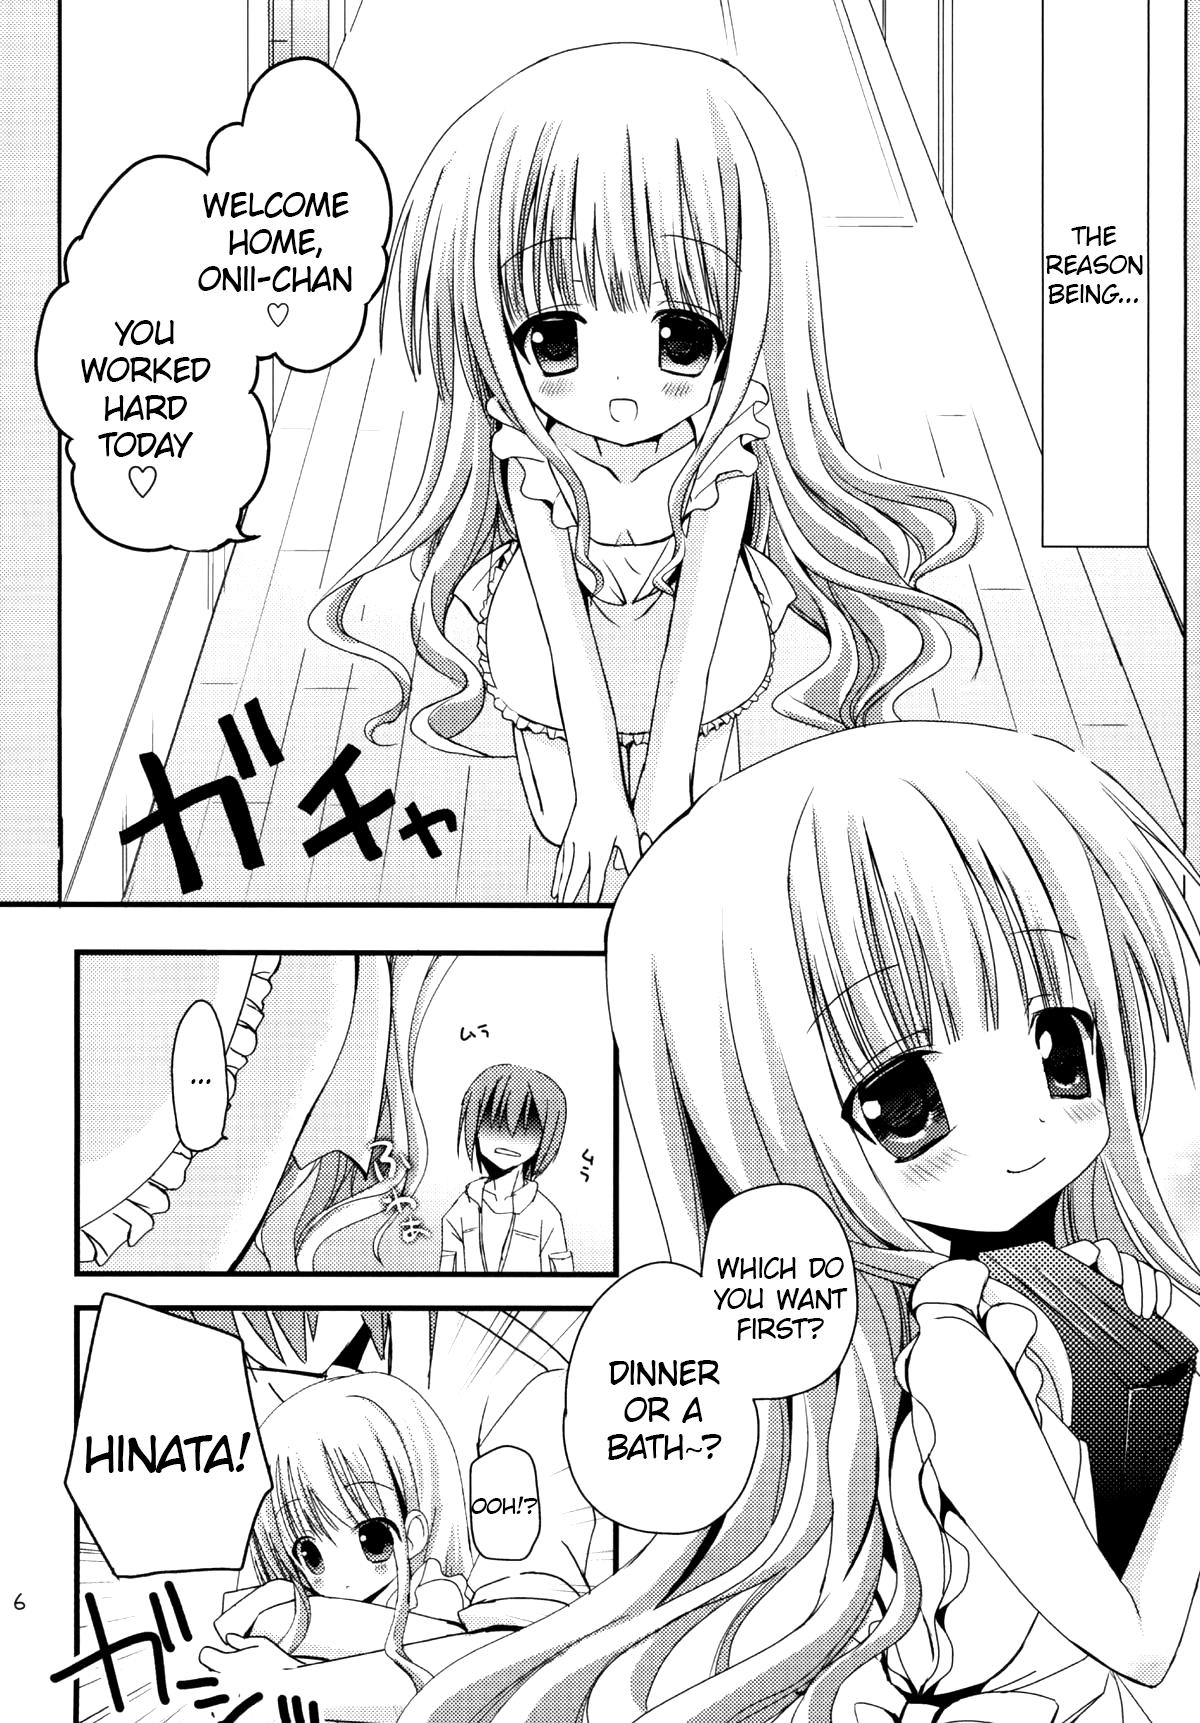 Topless Hinata wa Ore no Yome! - Ro-kyu-bu Sologirl - Page 5